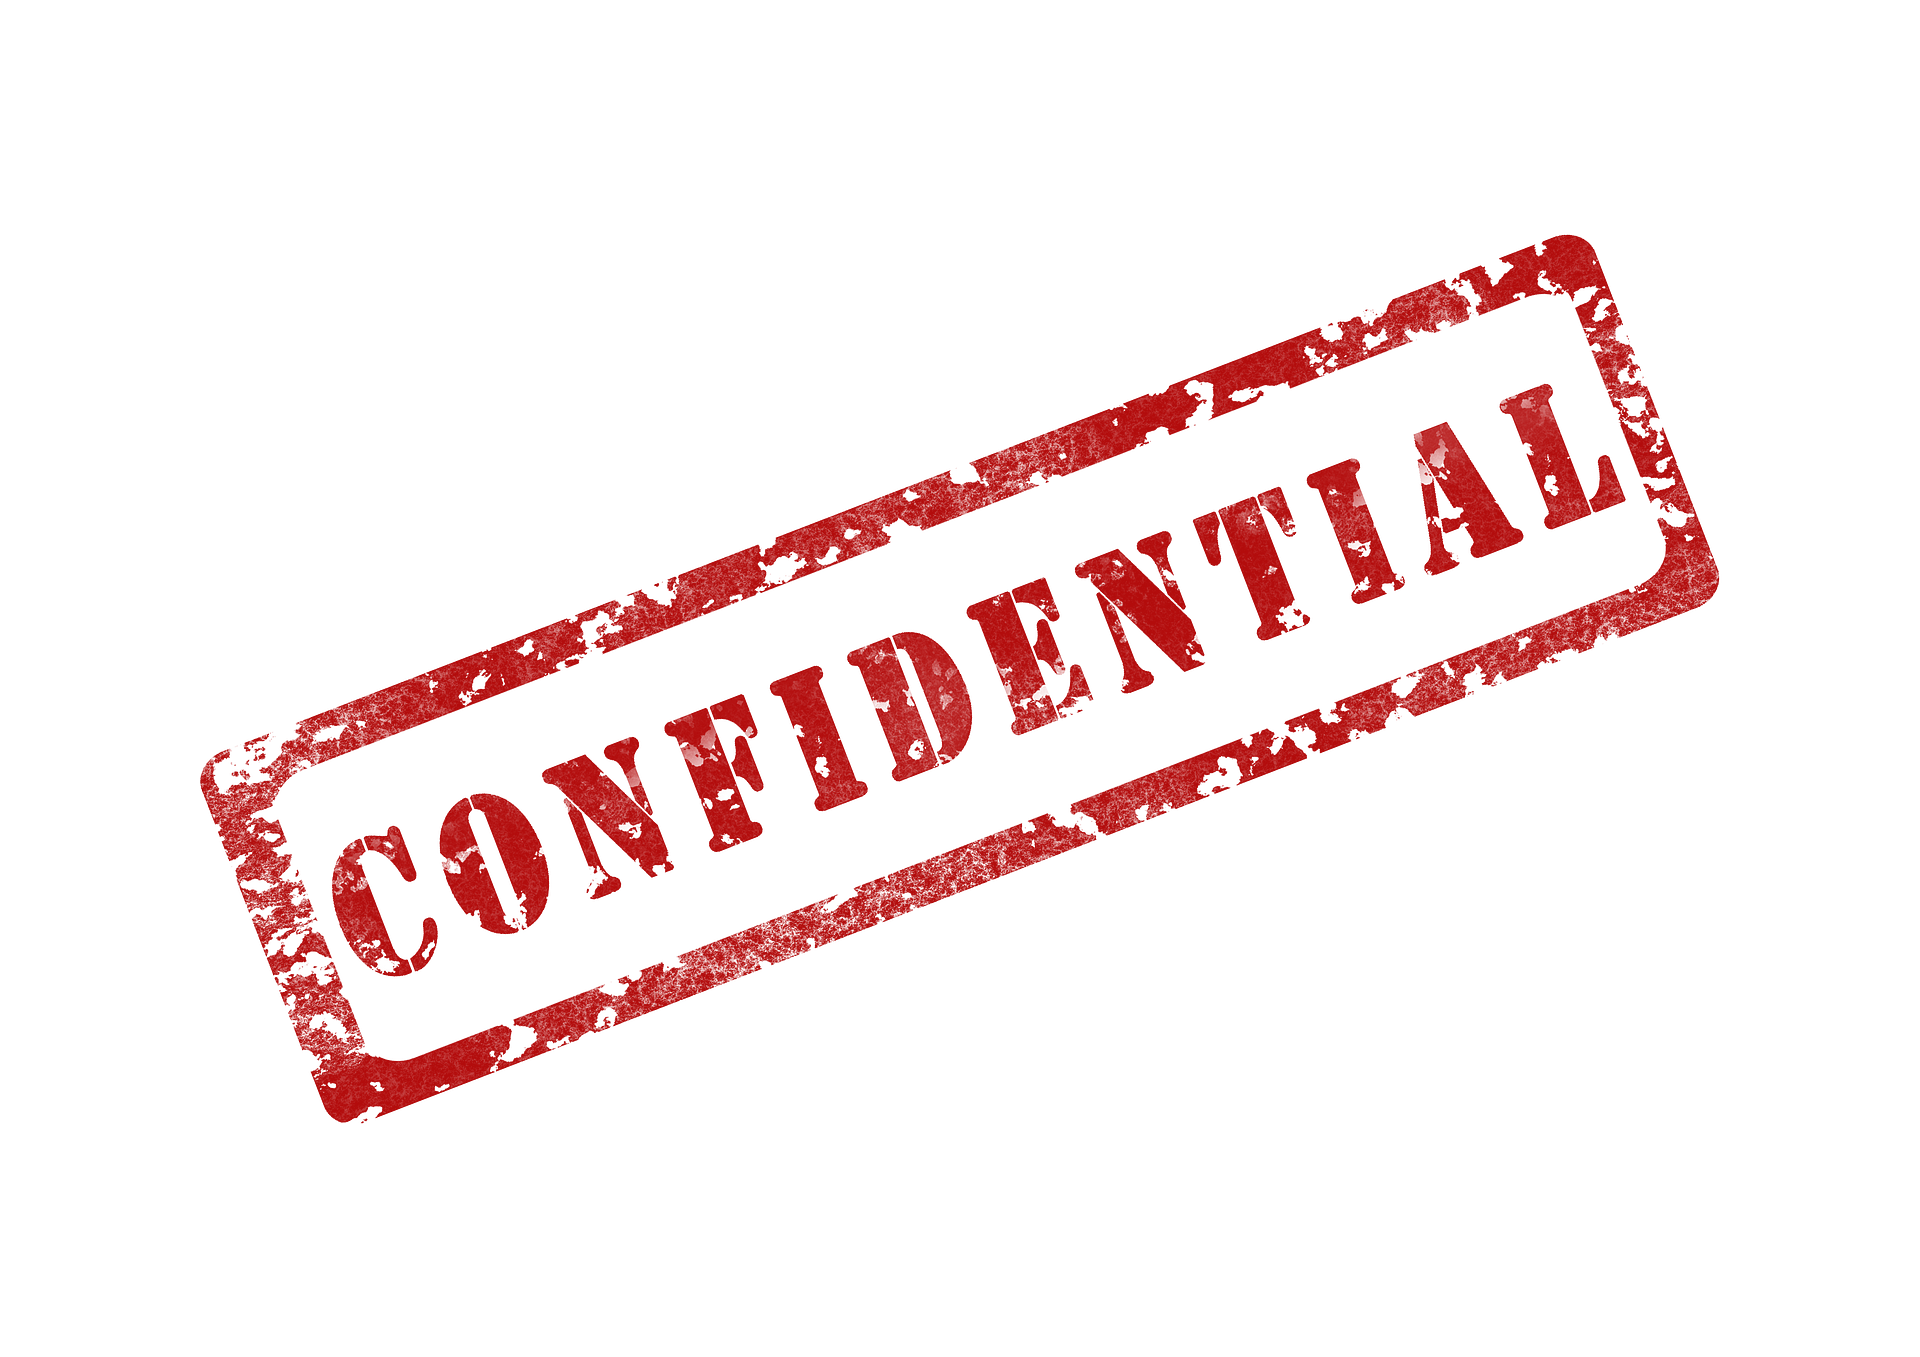 confidential-264516_1920